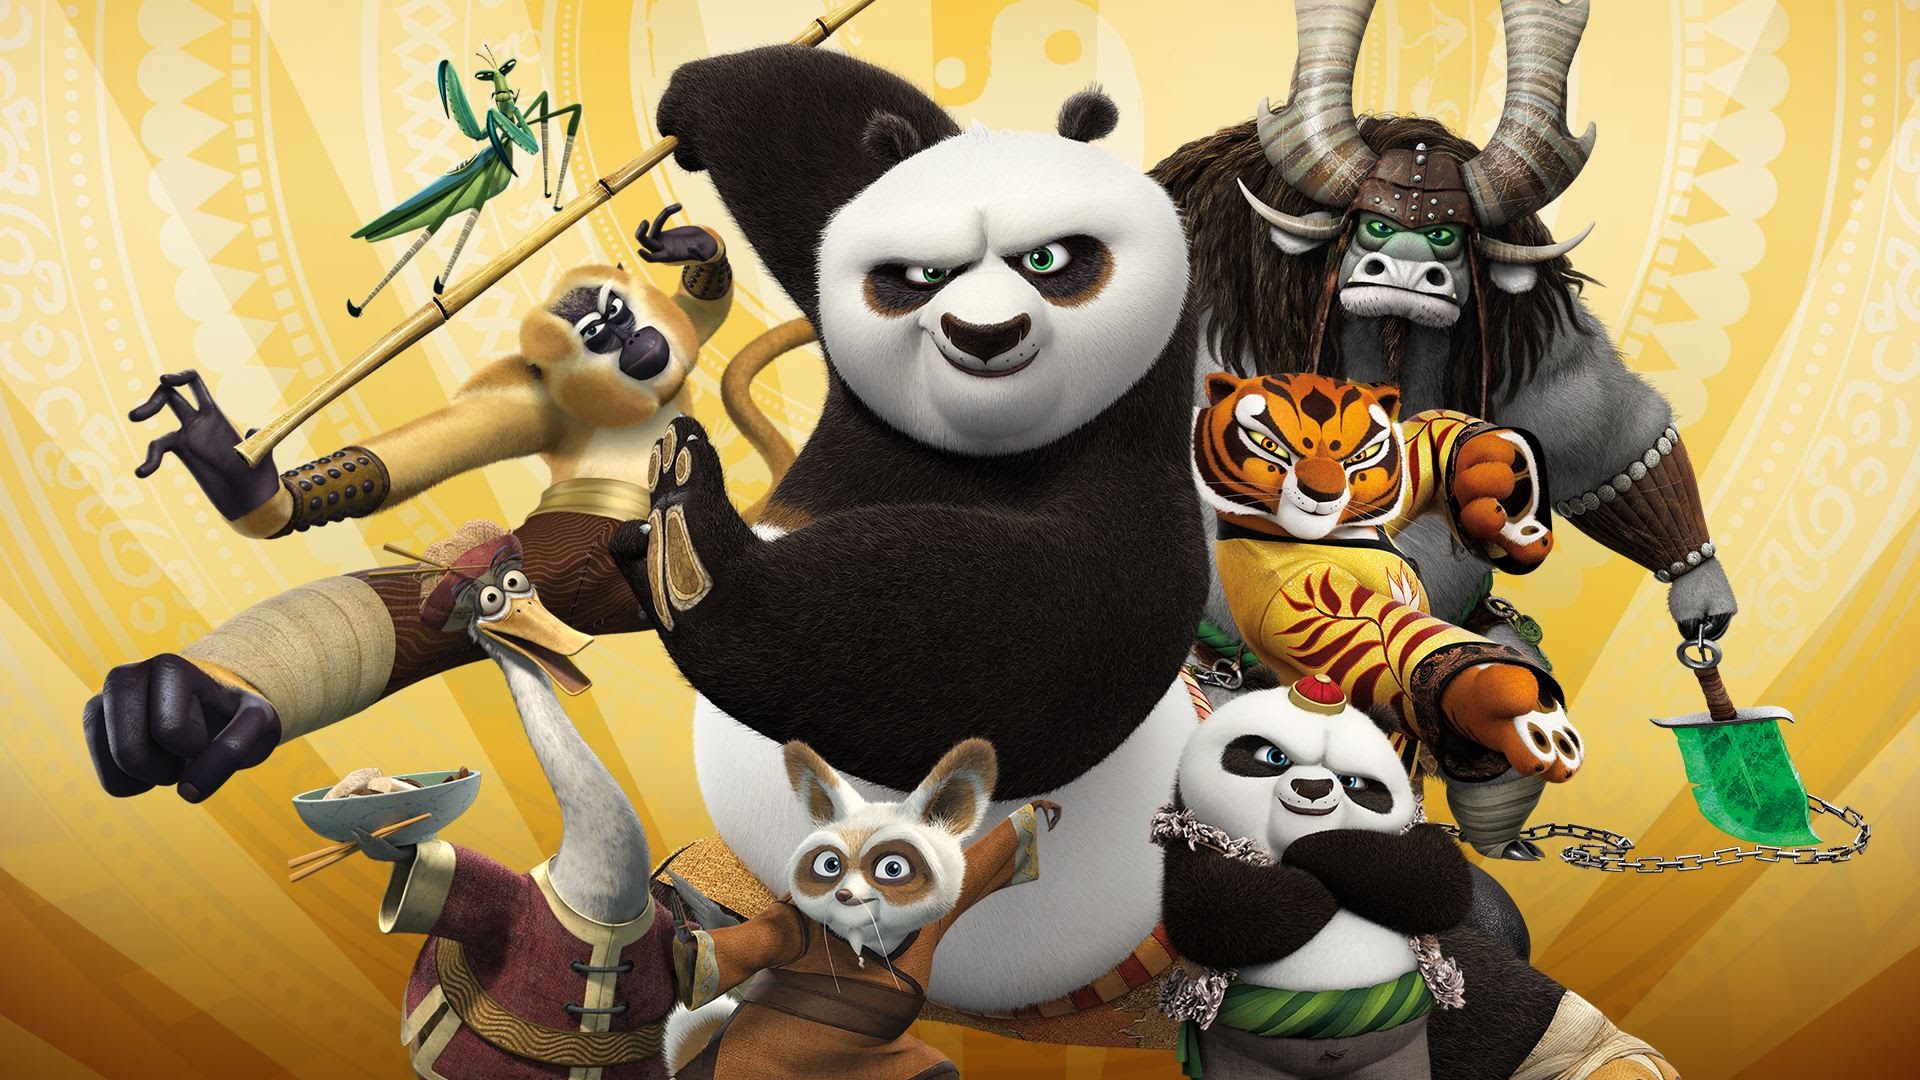 Descargar fondos de escritorio de Kung Fu Panda: Showdown Of Legendary Legends HD